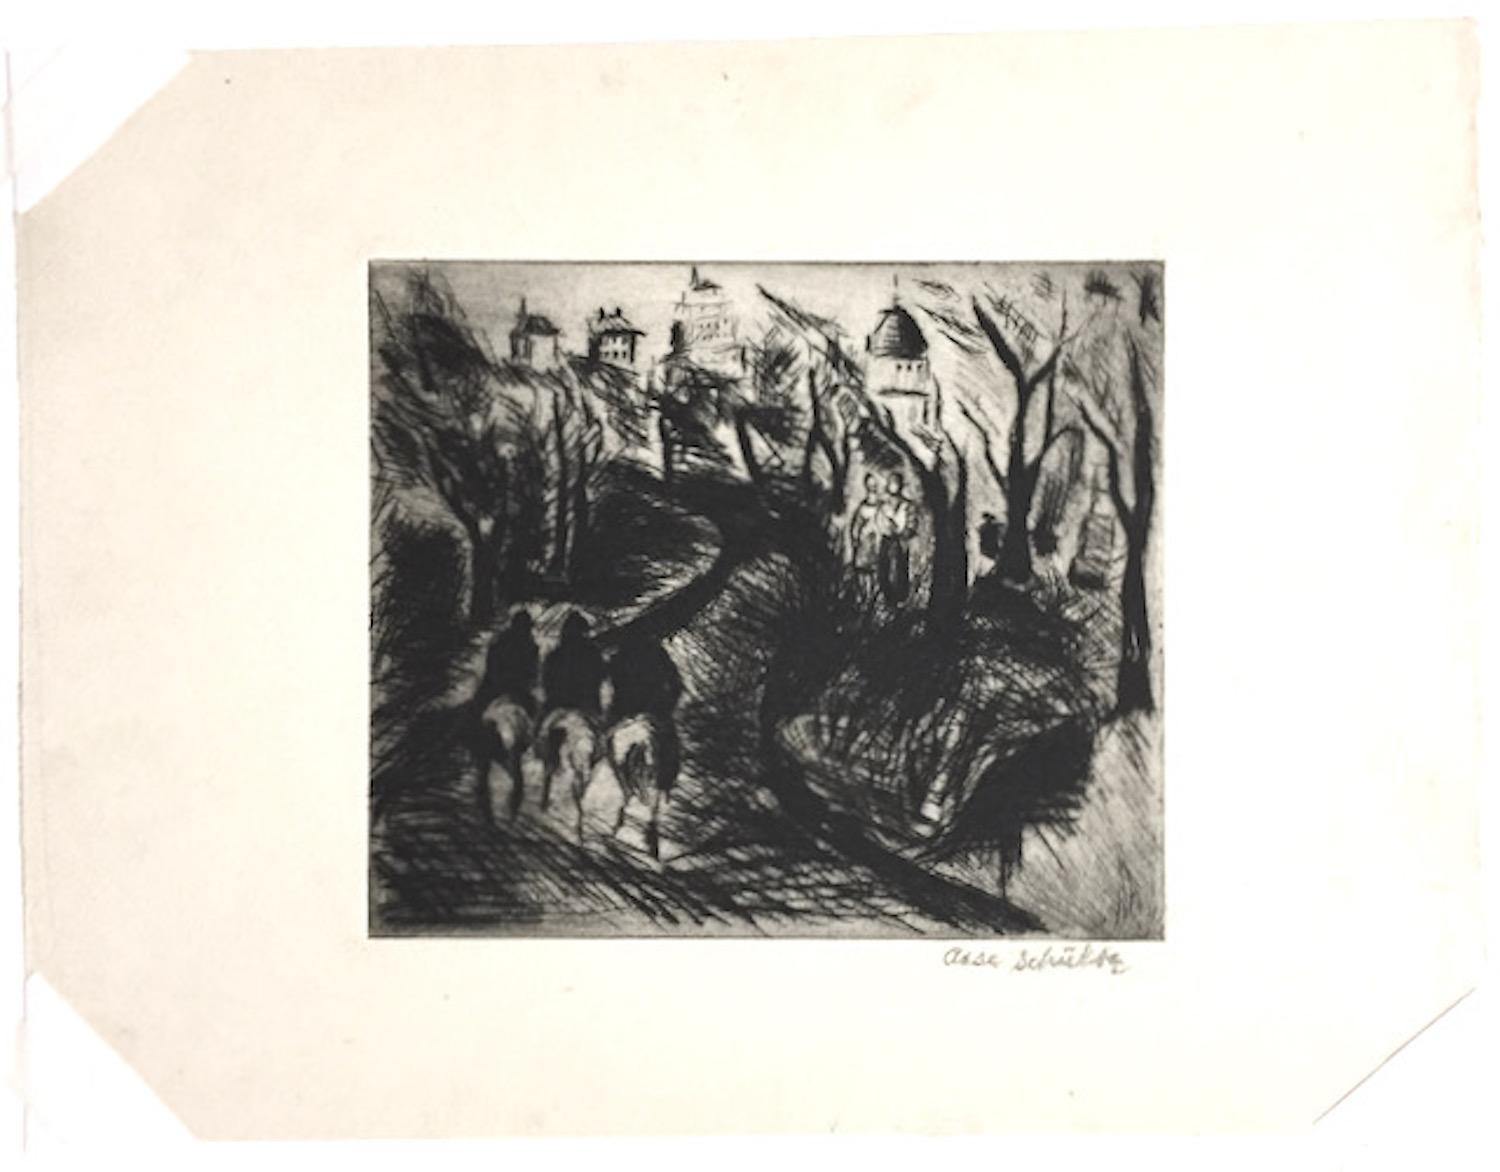 Riders im Central Park (New York City) – Print von A. Schultz